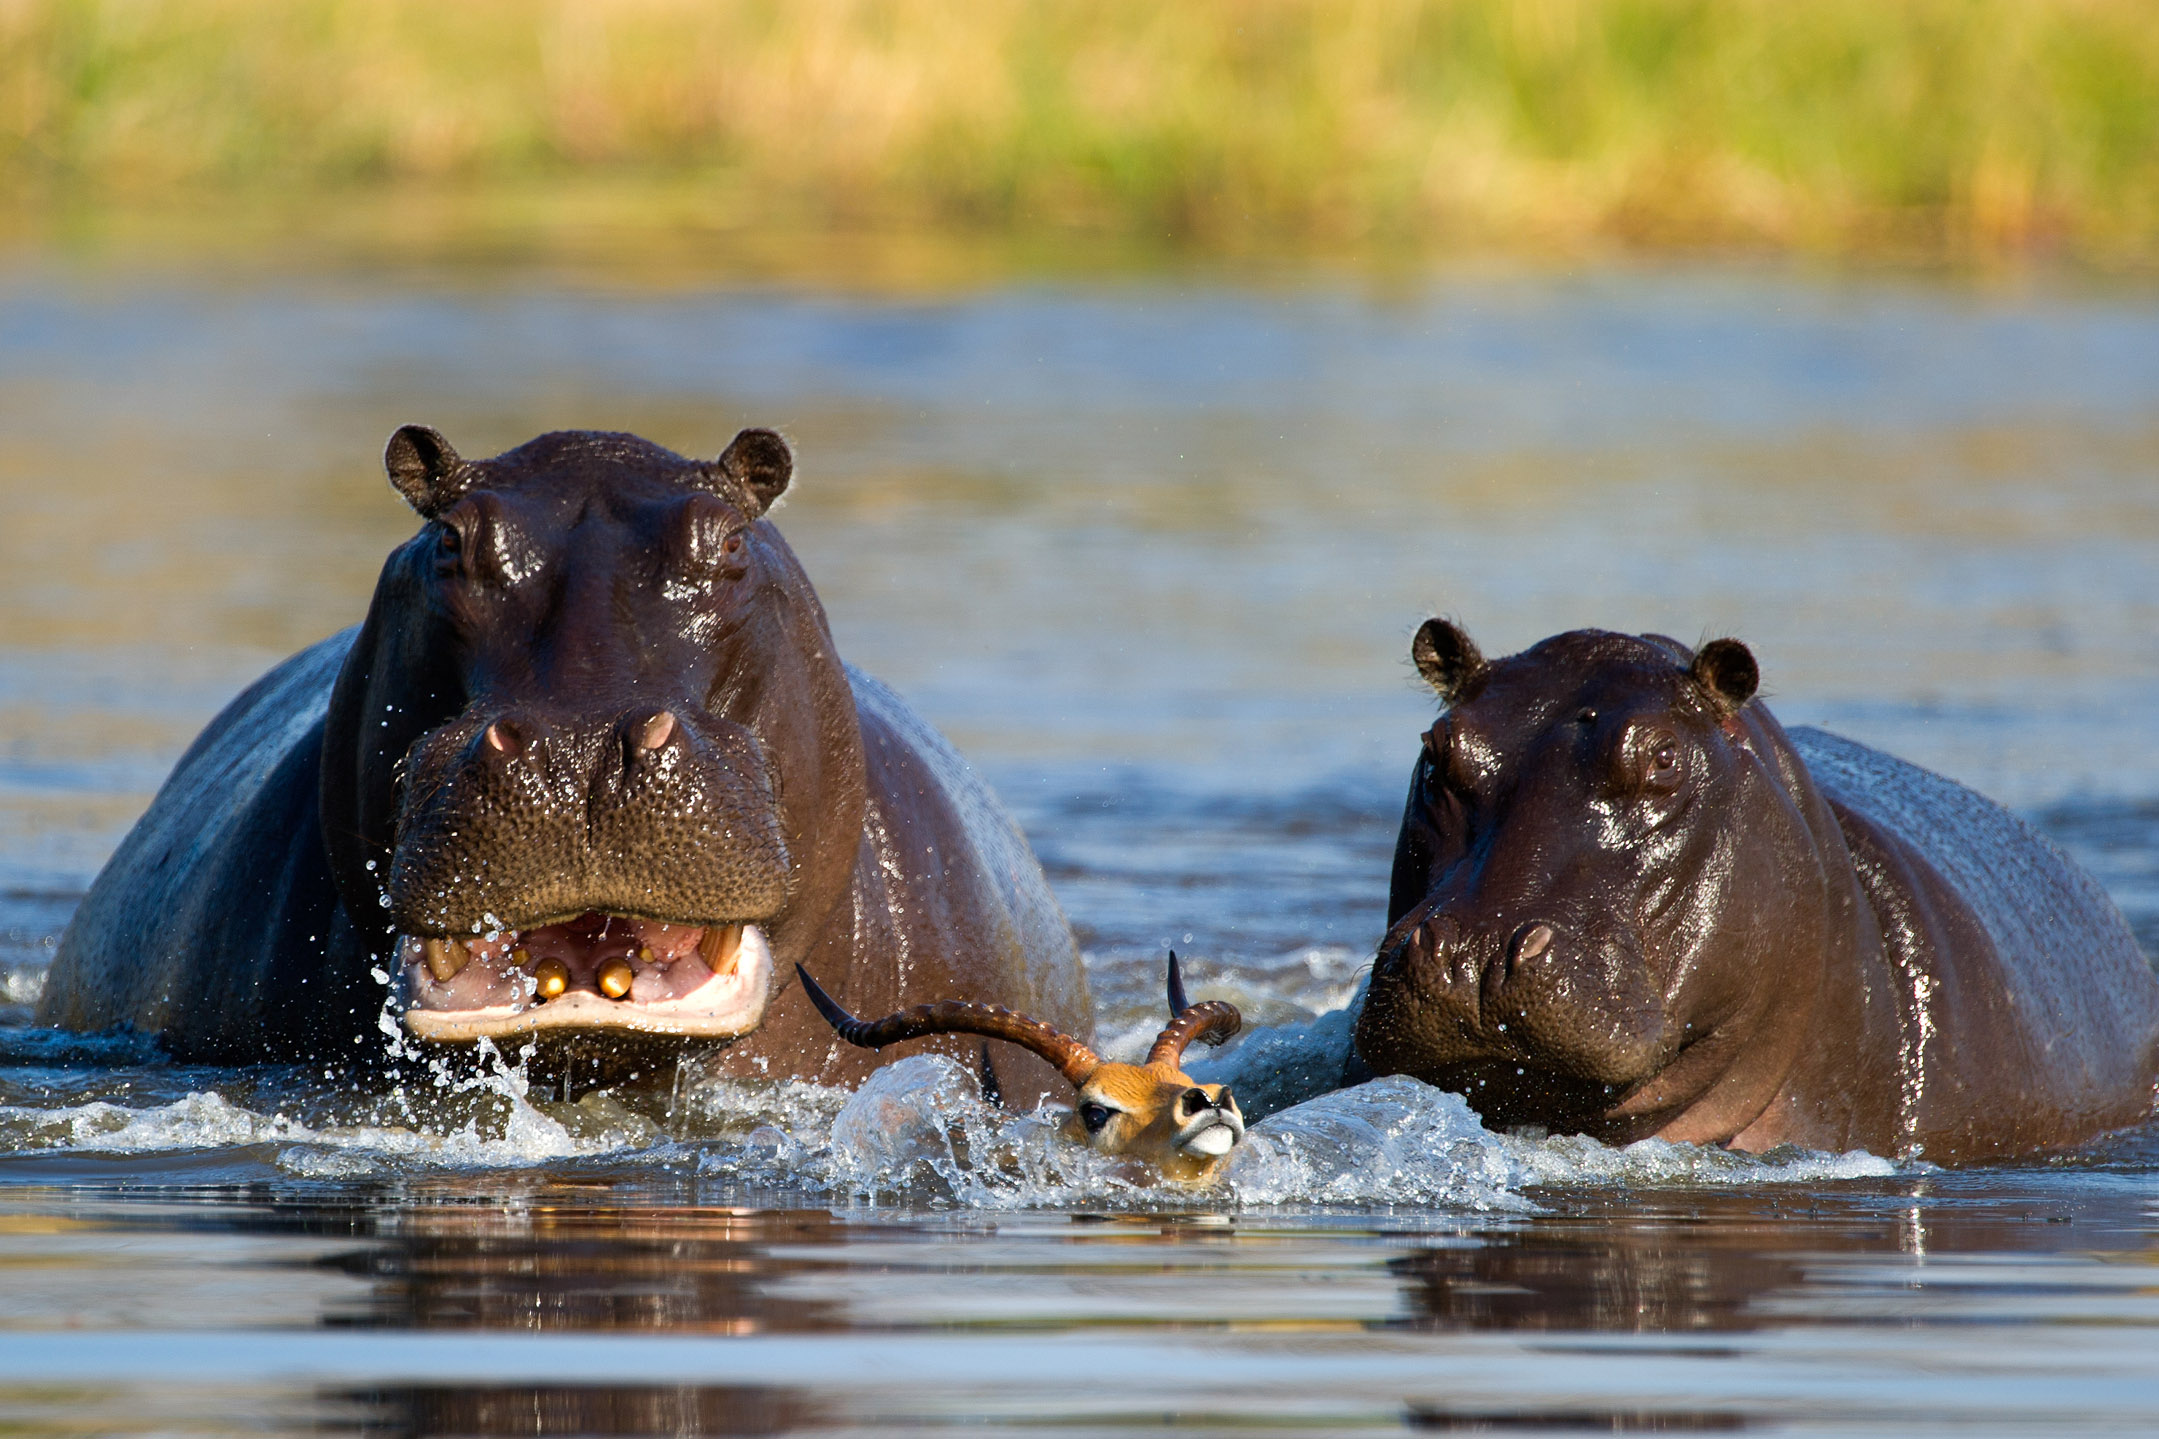 Antílope de pensamiento rápido escapa de hipopótamo hambriento